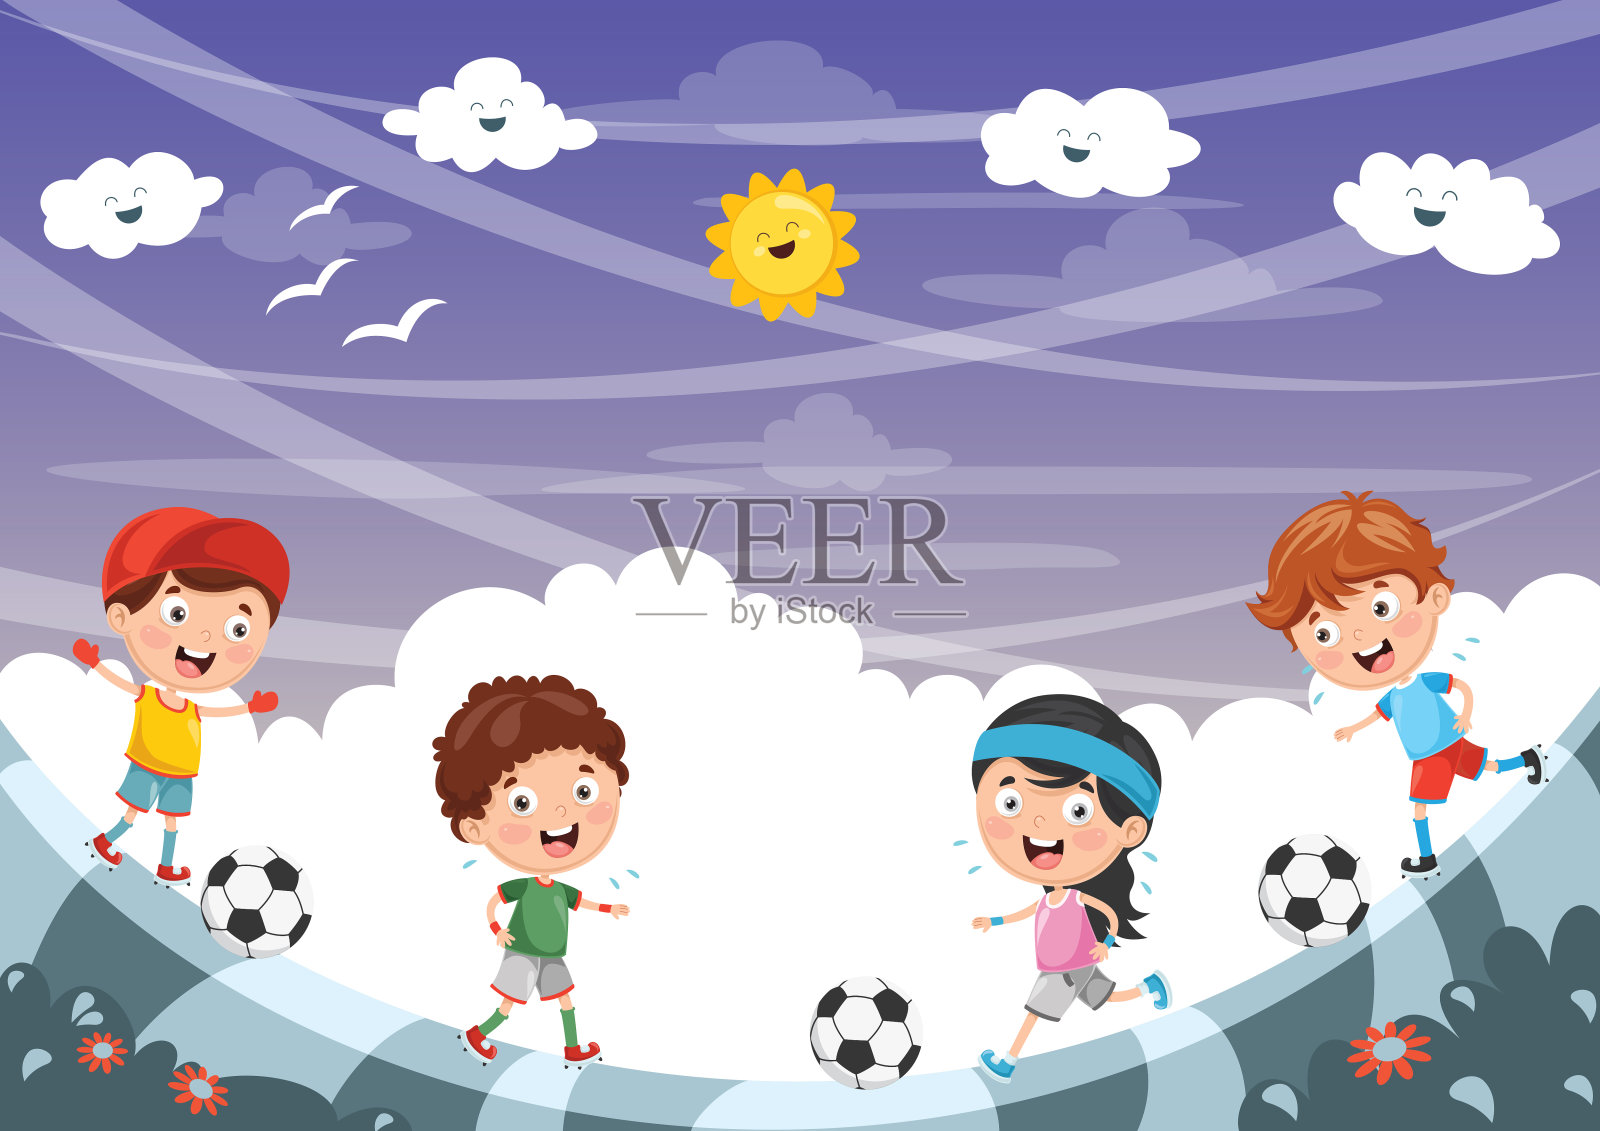 矢量插图的孩子踢足球插画图片素材